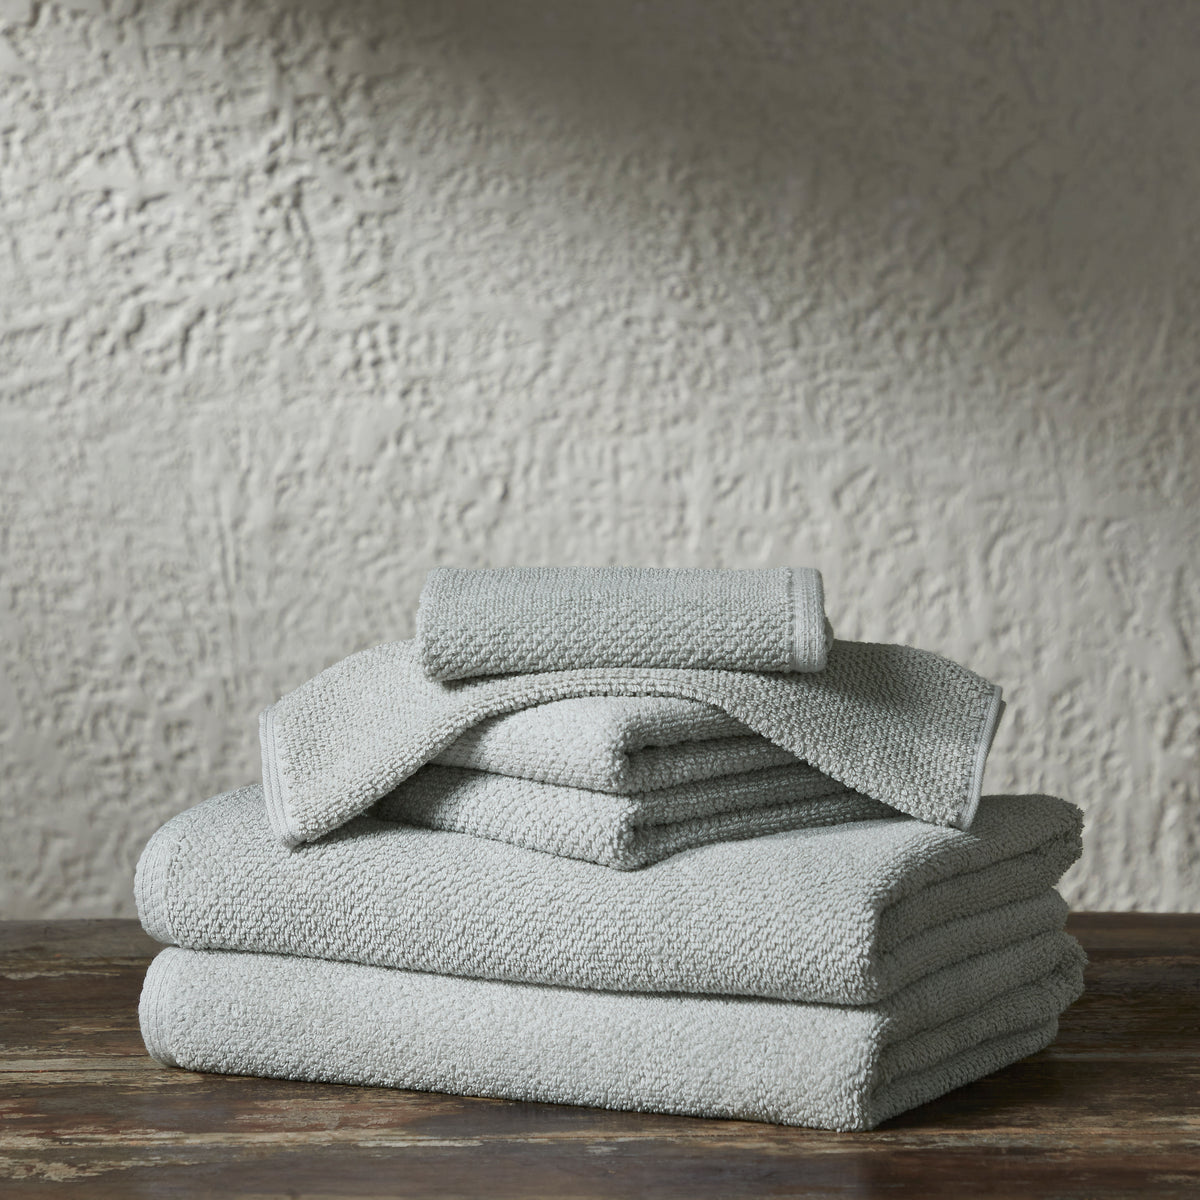 6 Piece White Popcorn cotton Bath Towel Set (2 Bath Towels, 2 Hand